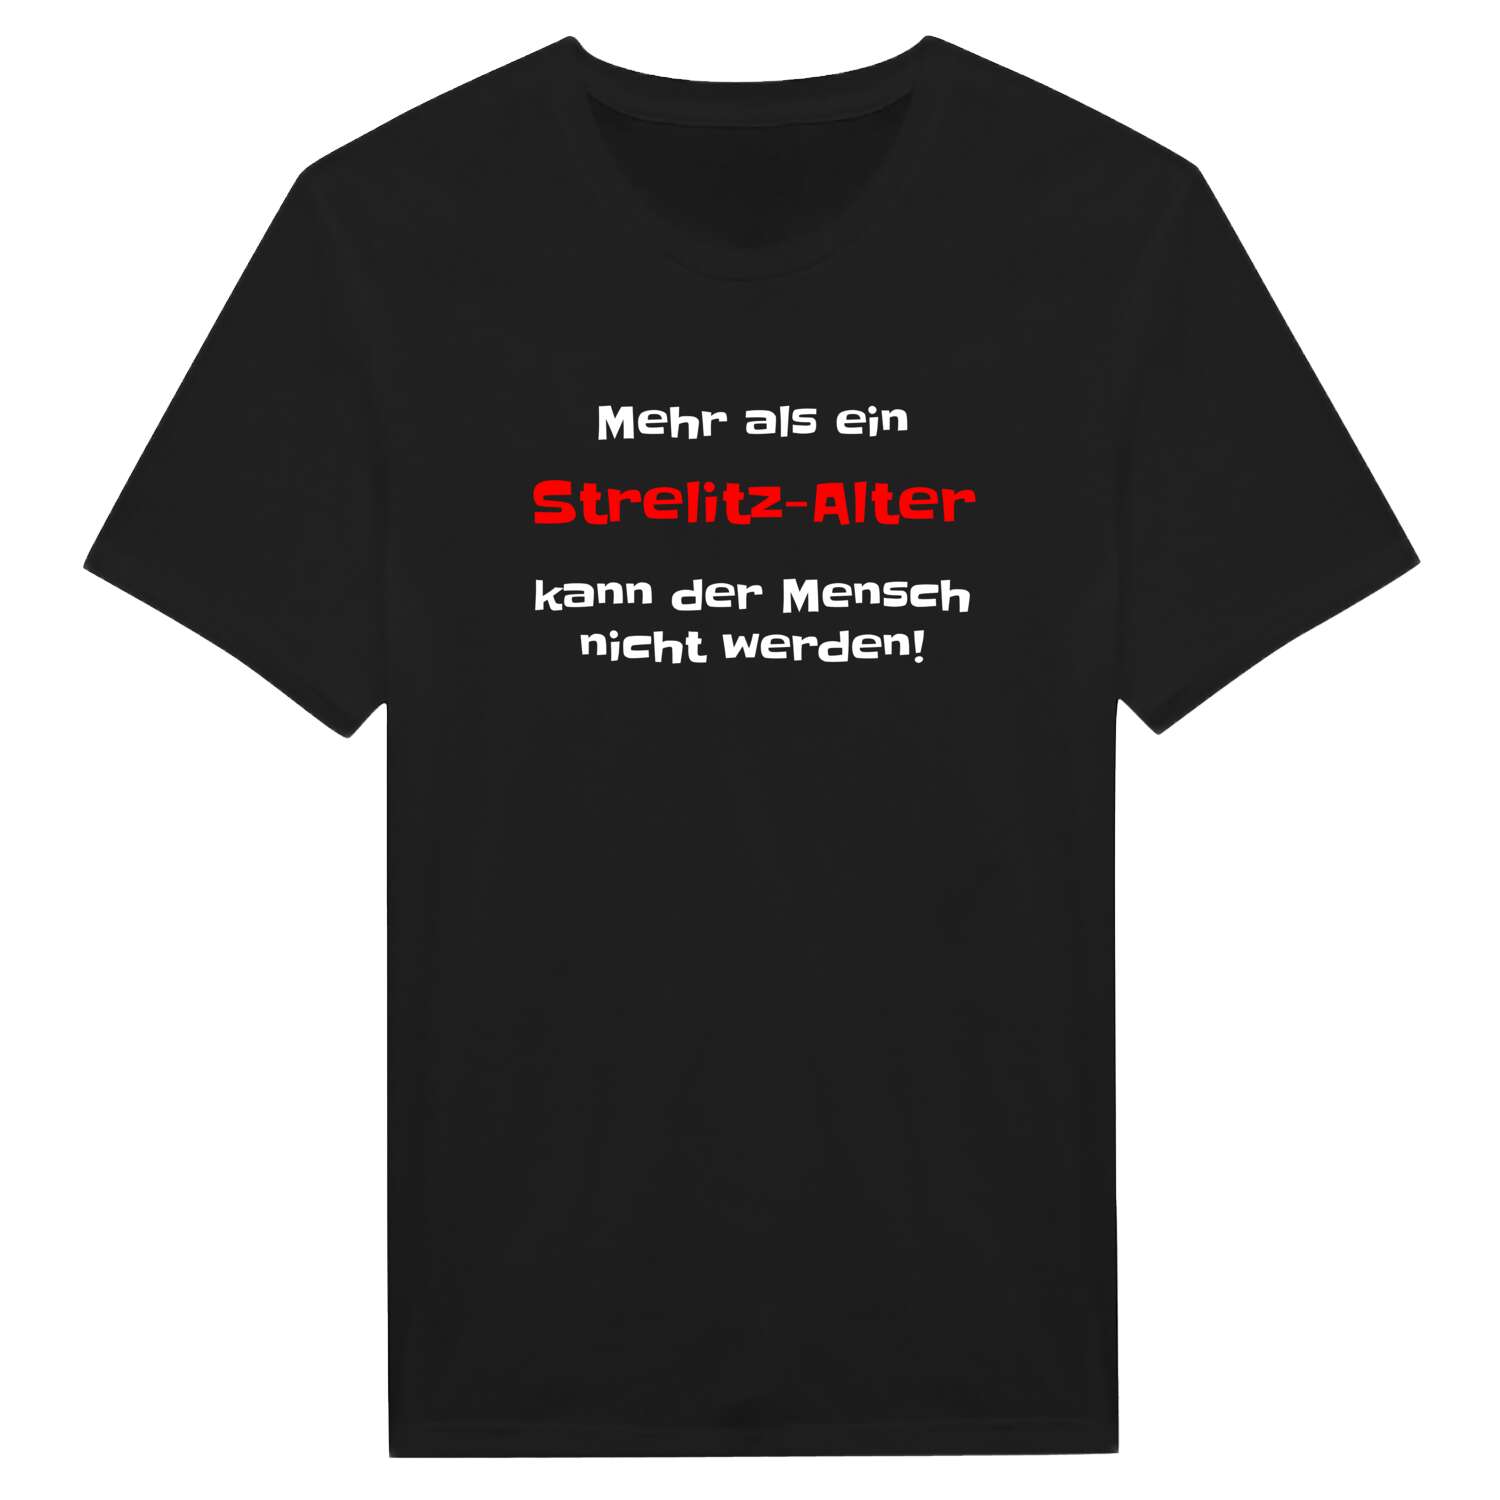 Strelitz-Alt T-Shirt »Mehr als ein«